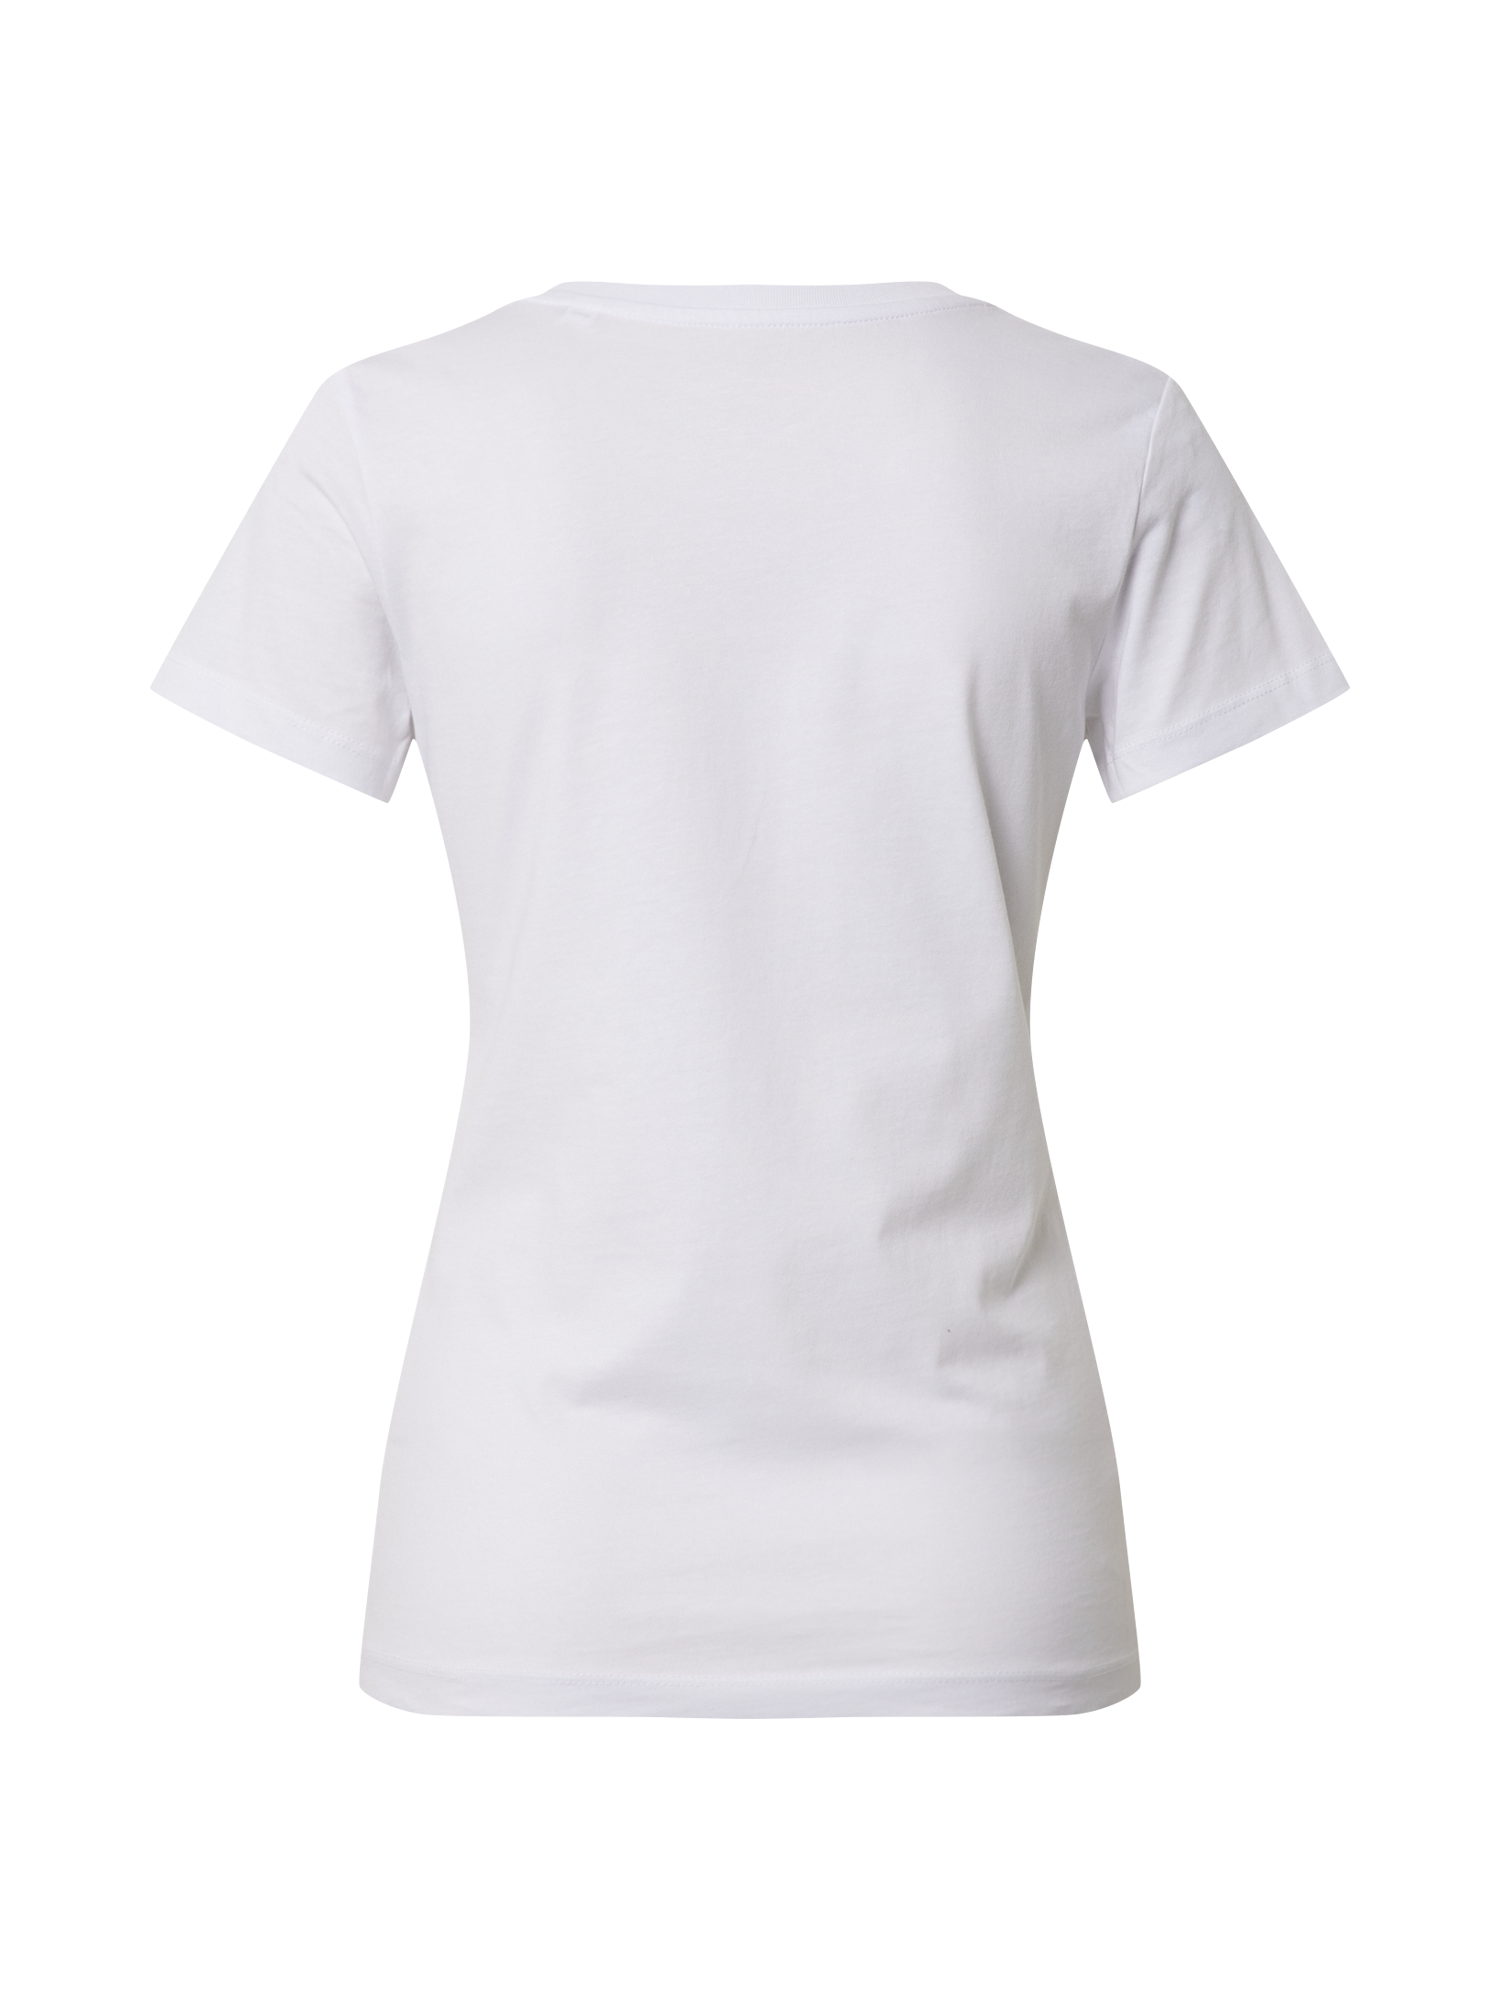 Odzież Kobiety EINSTEIN & NEWTON Koszulka Fly Dog w kolorze Białym 